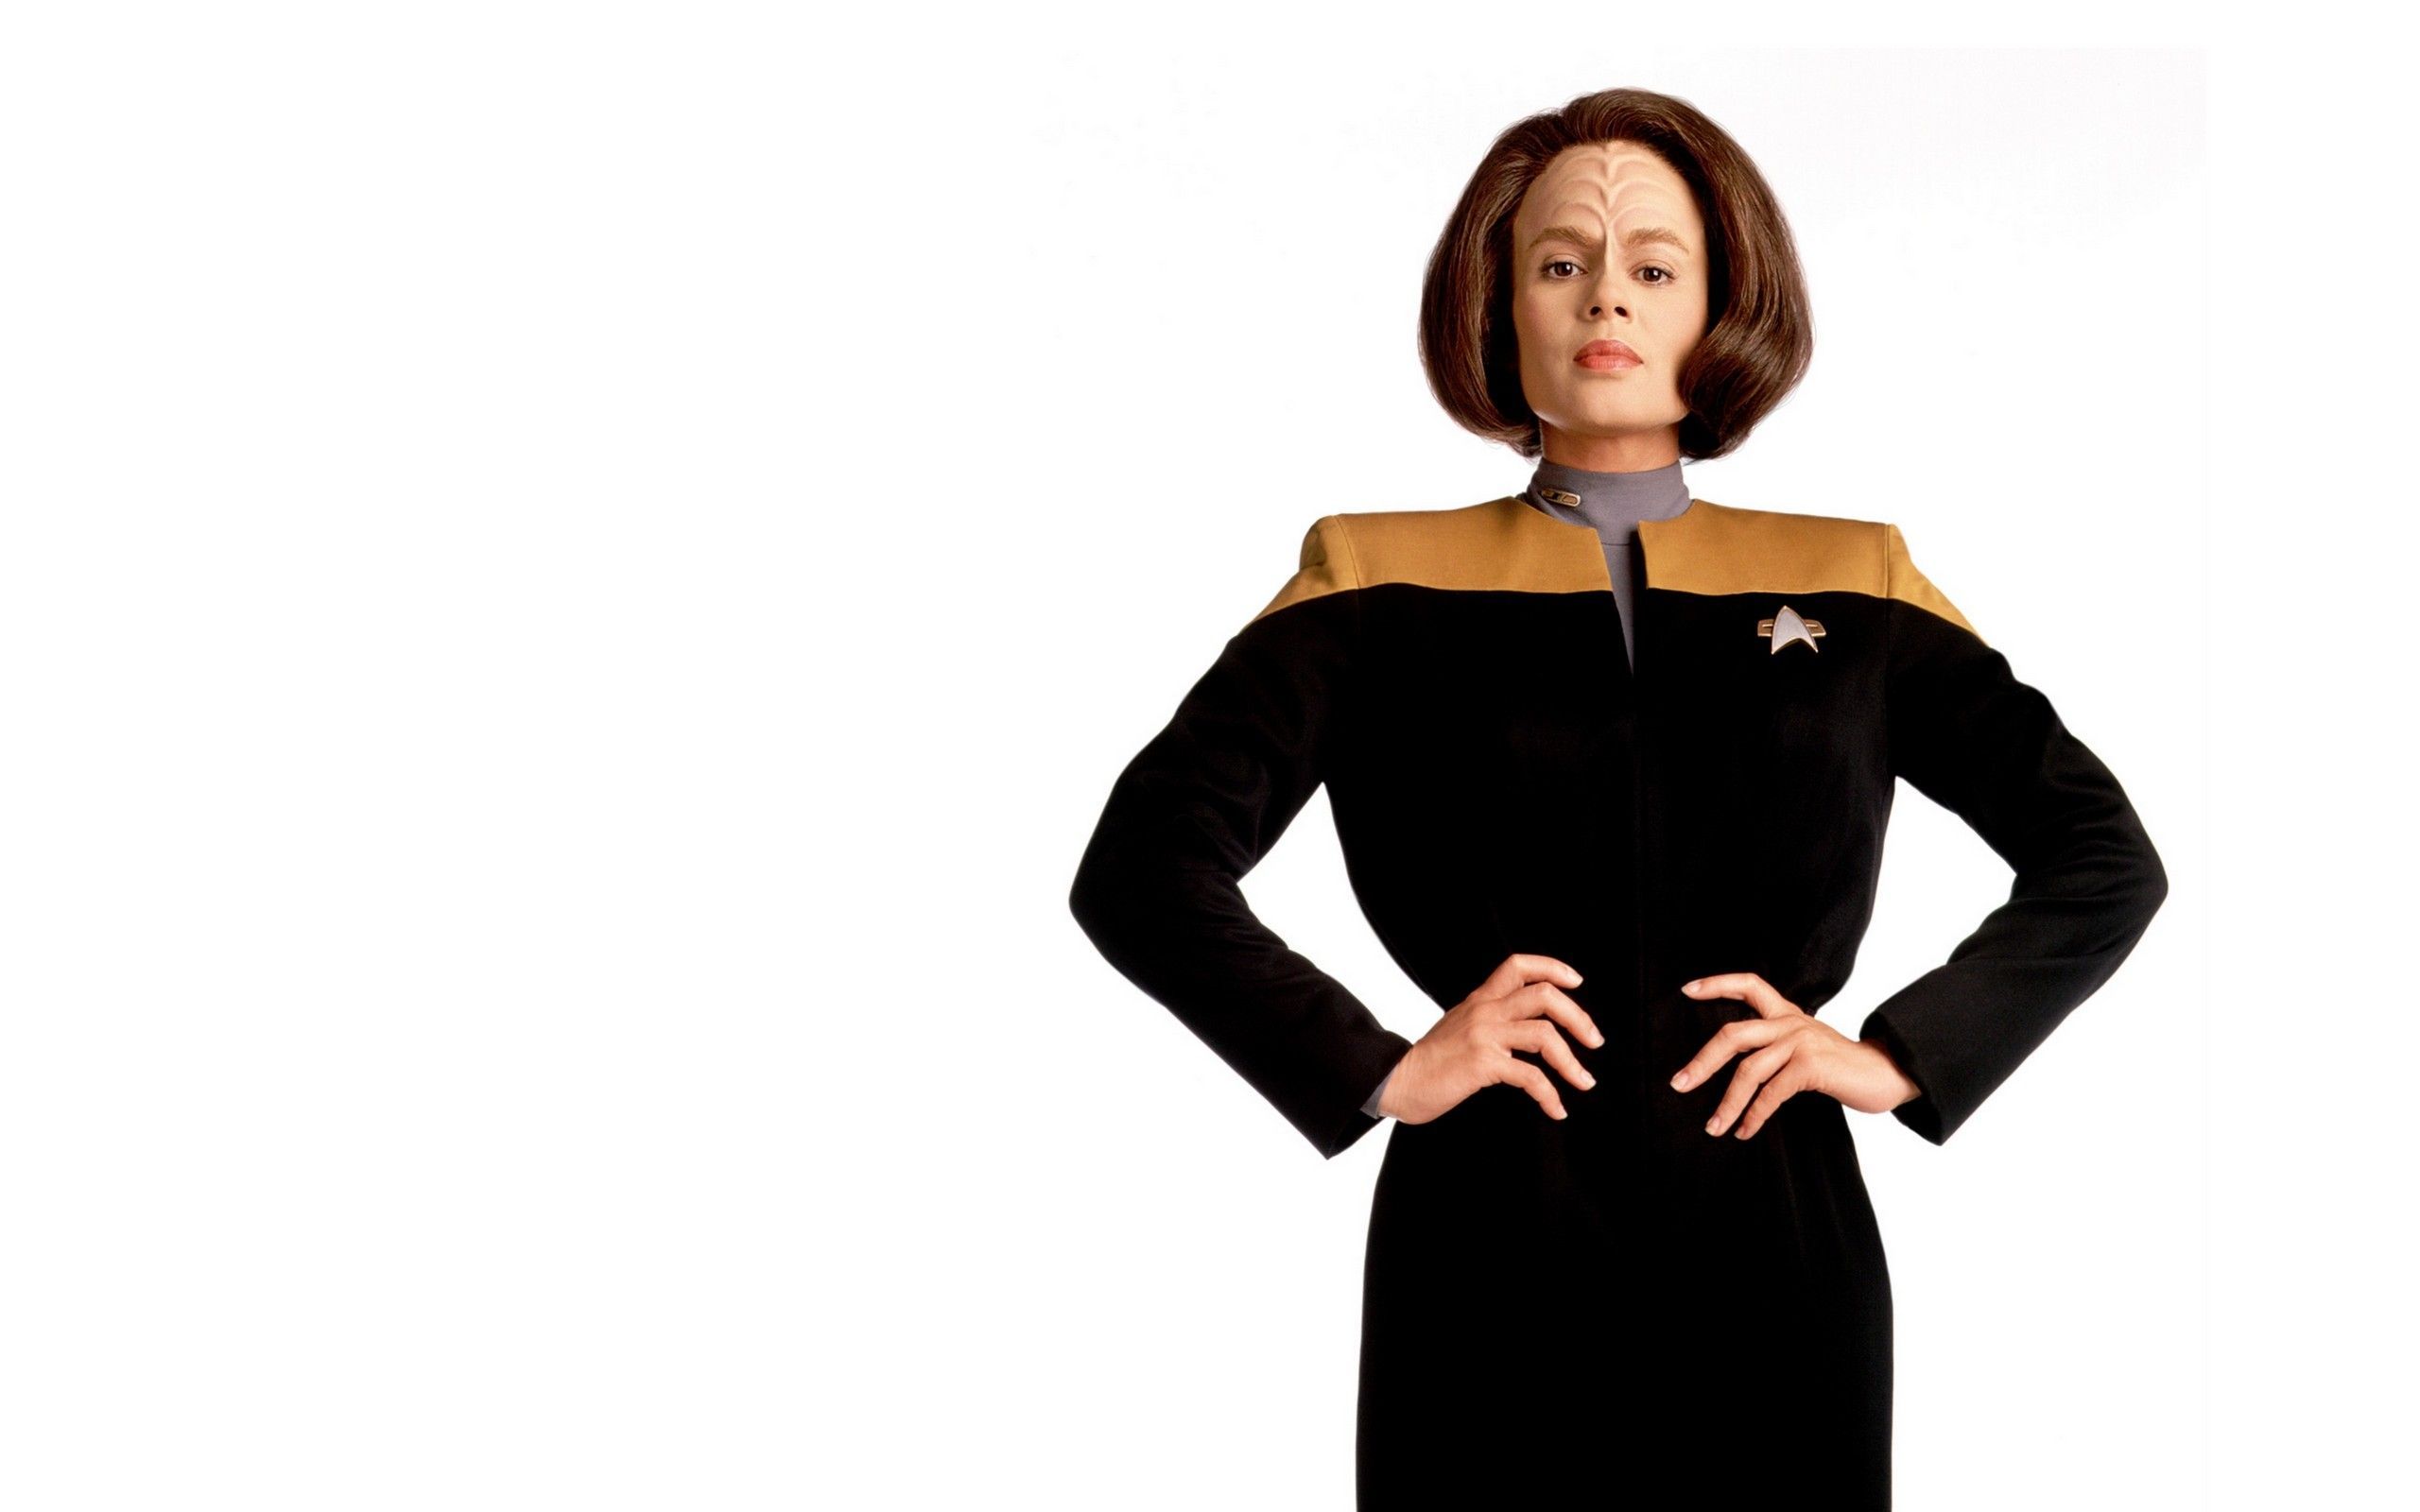 Star Trek Women Wallpaper: Star Trek Women. Star trek, Star trek voyager, Star trek starships